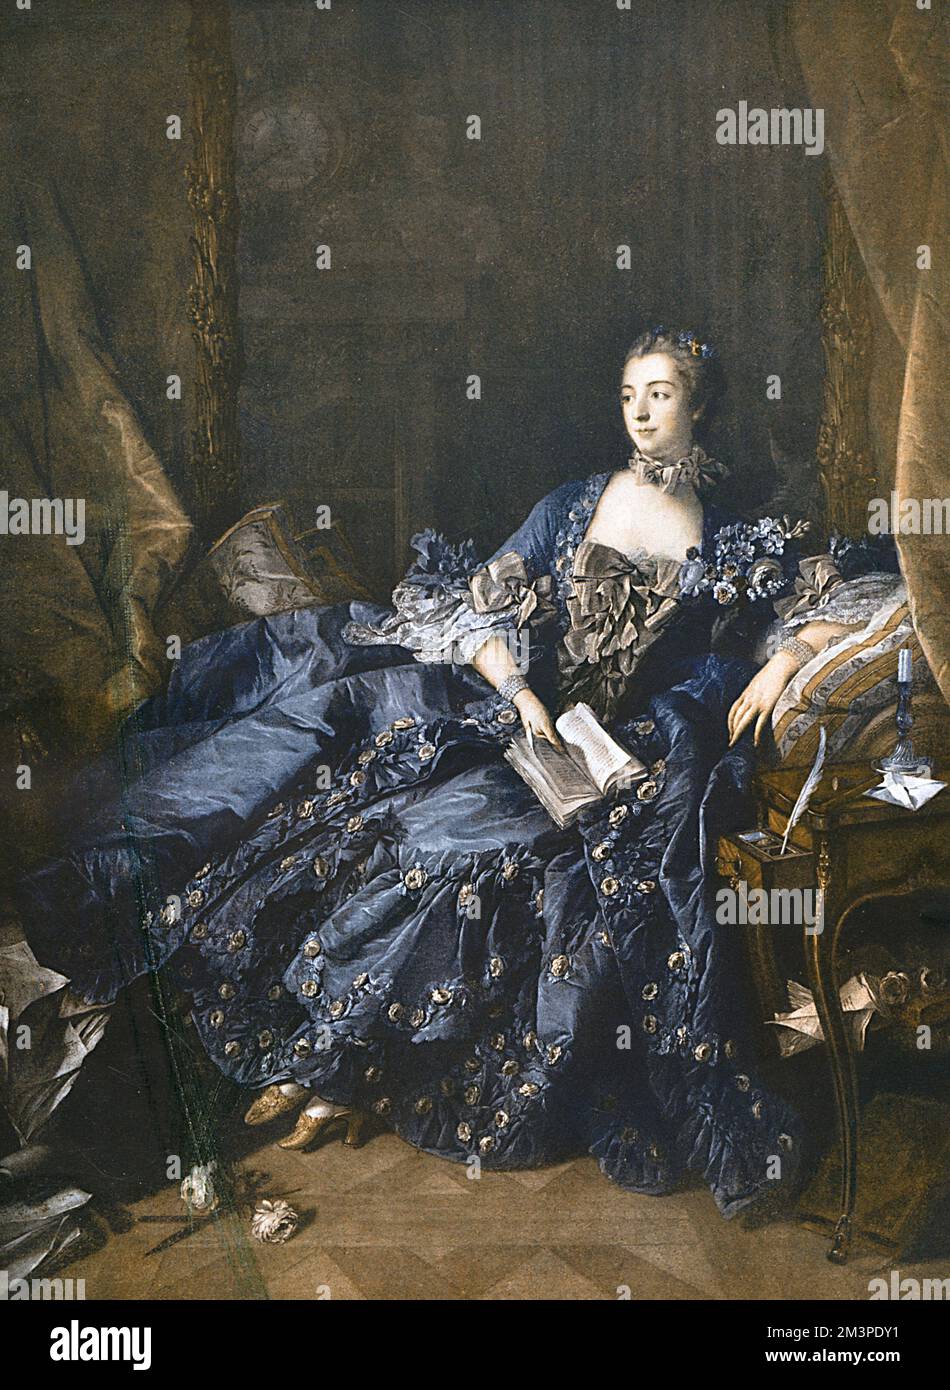 Jeanne Antoinette Marquise de Pompadour, Geliebte von Ludwig XV Frankreich (29.12.1721-15.04.1764). Ölgemälde von Francois Boucher Datum: 1758 Stockfoto